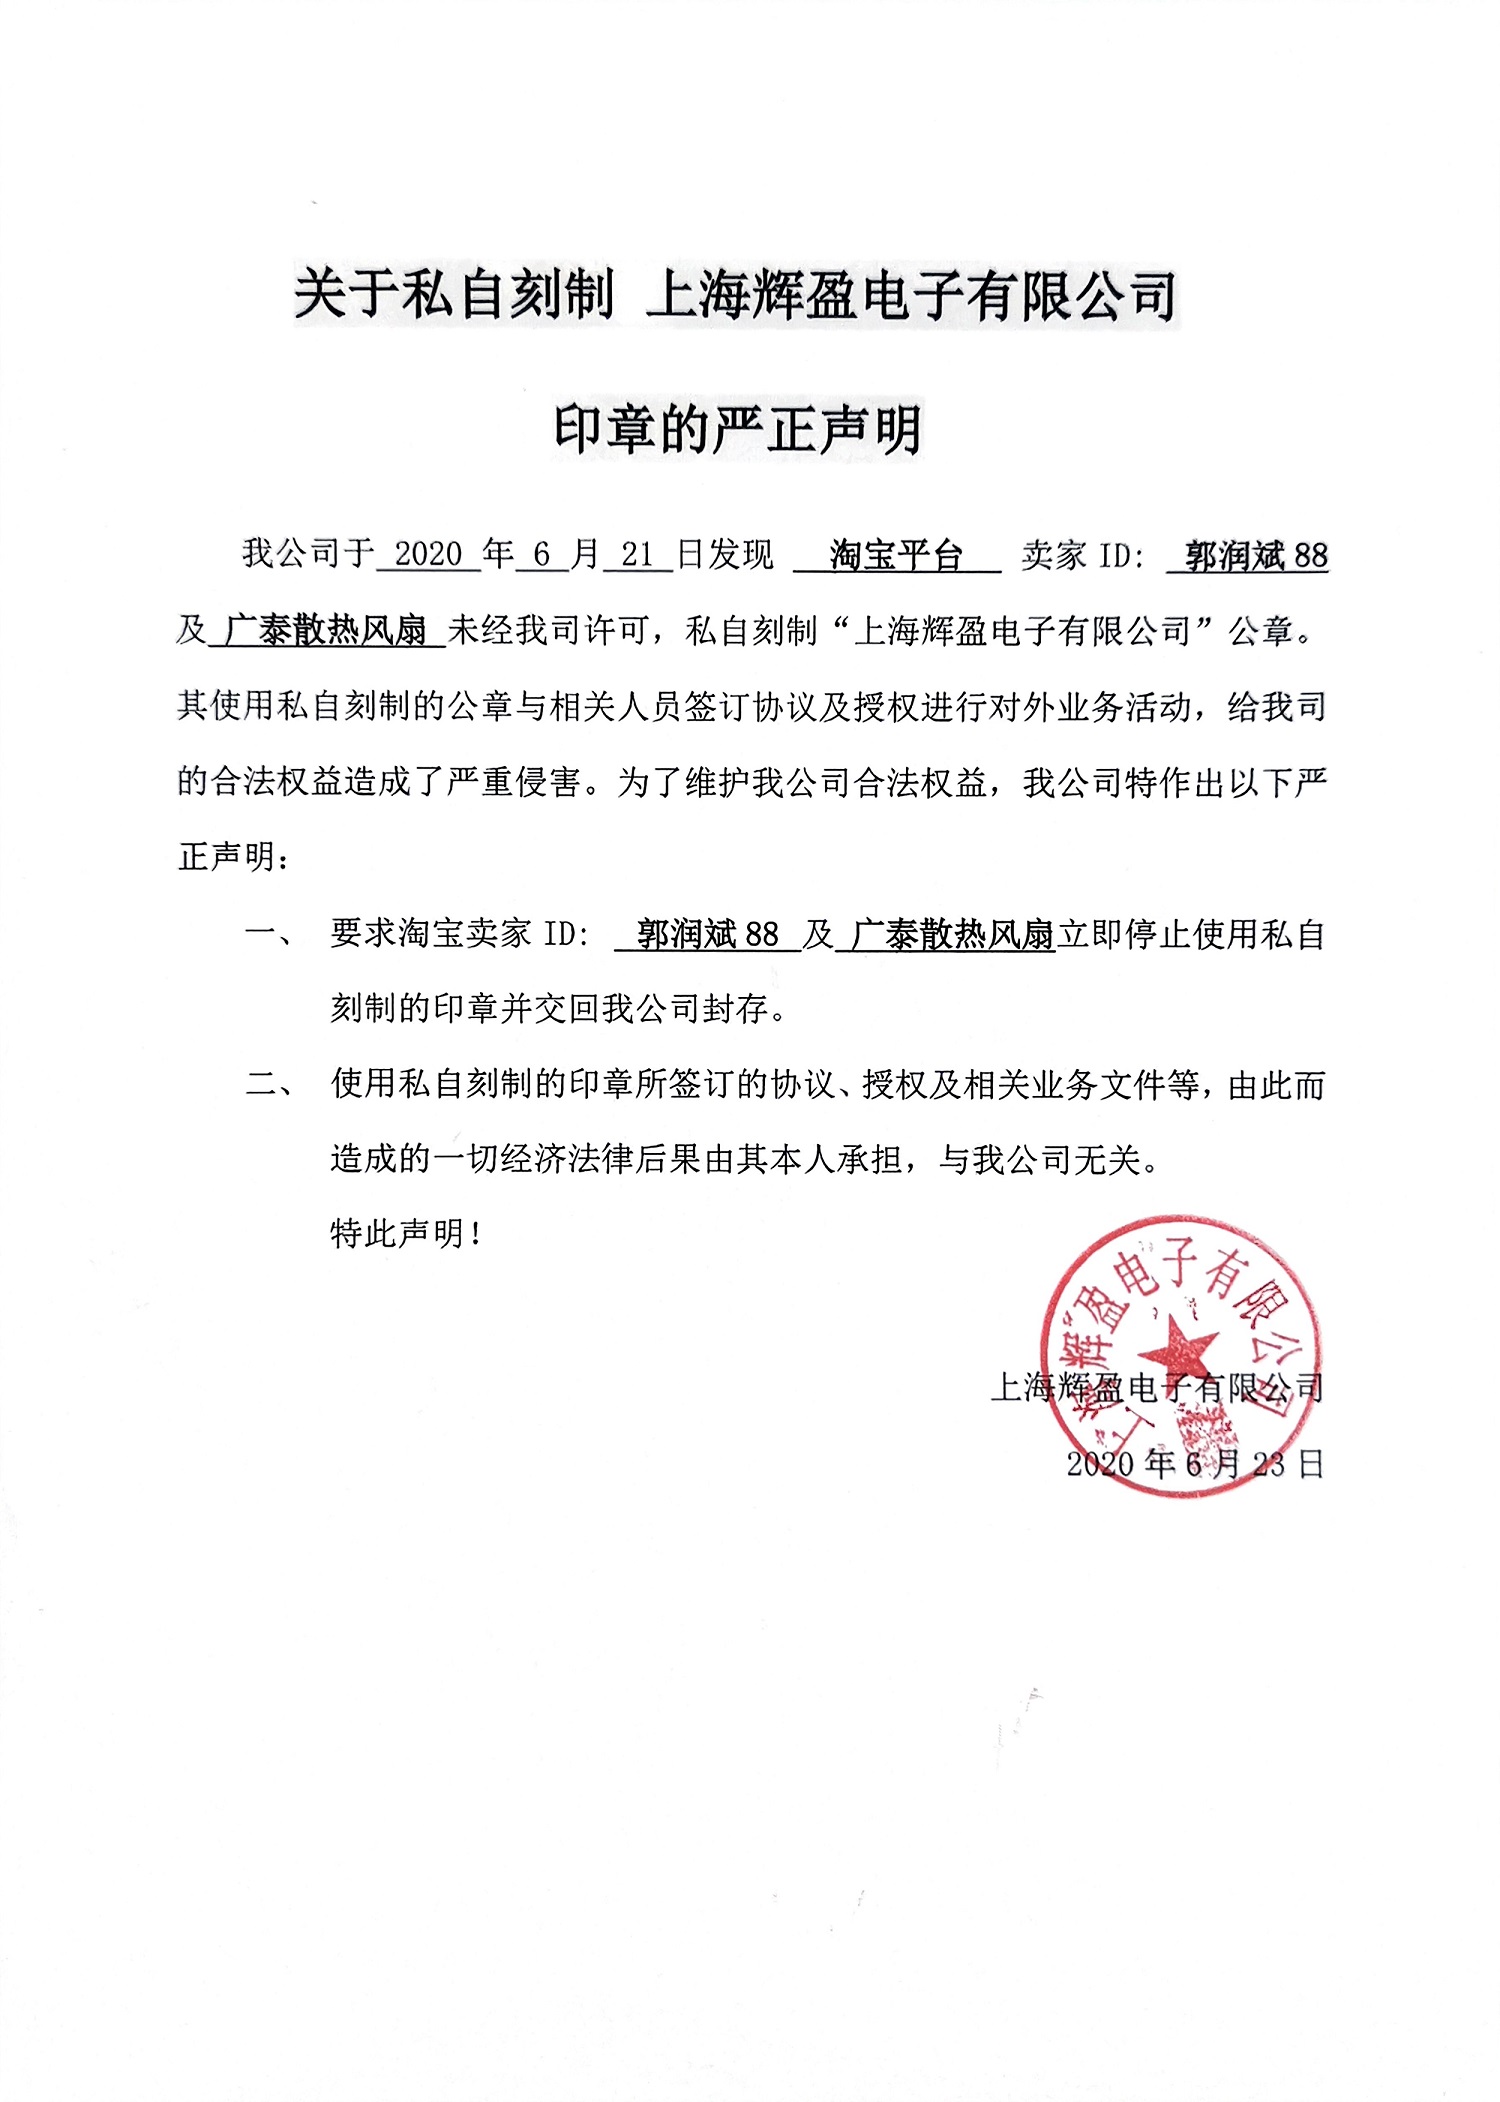 关于私自刻制 上海辉盈电子有限公司印章的严正声明